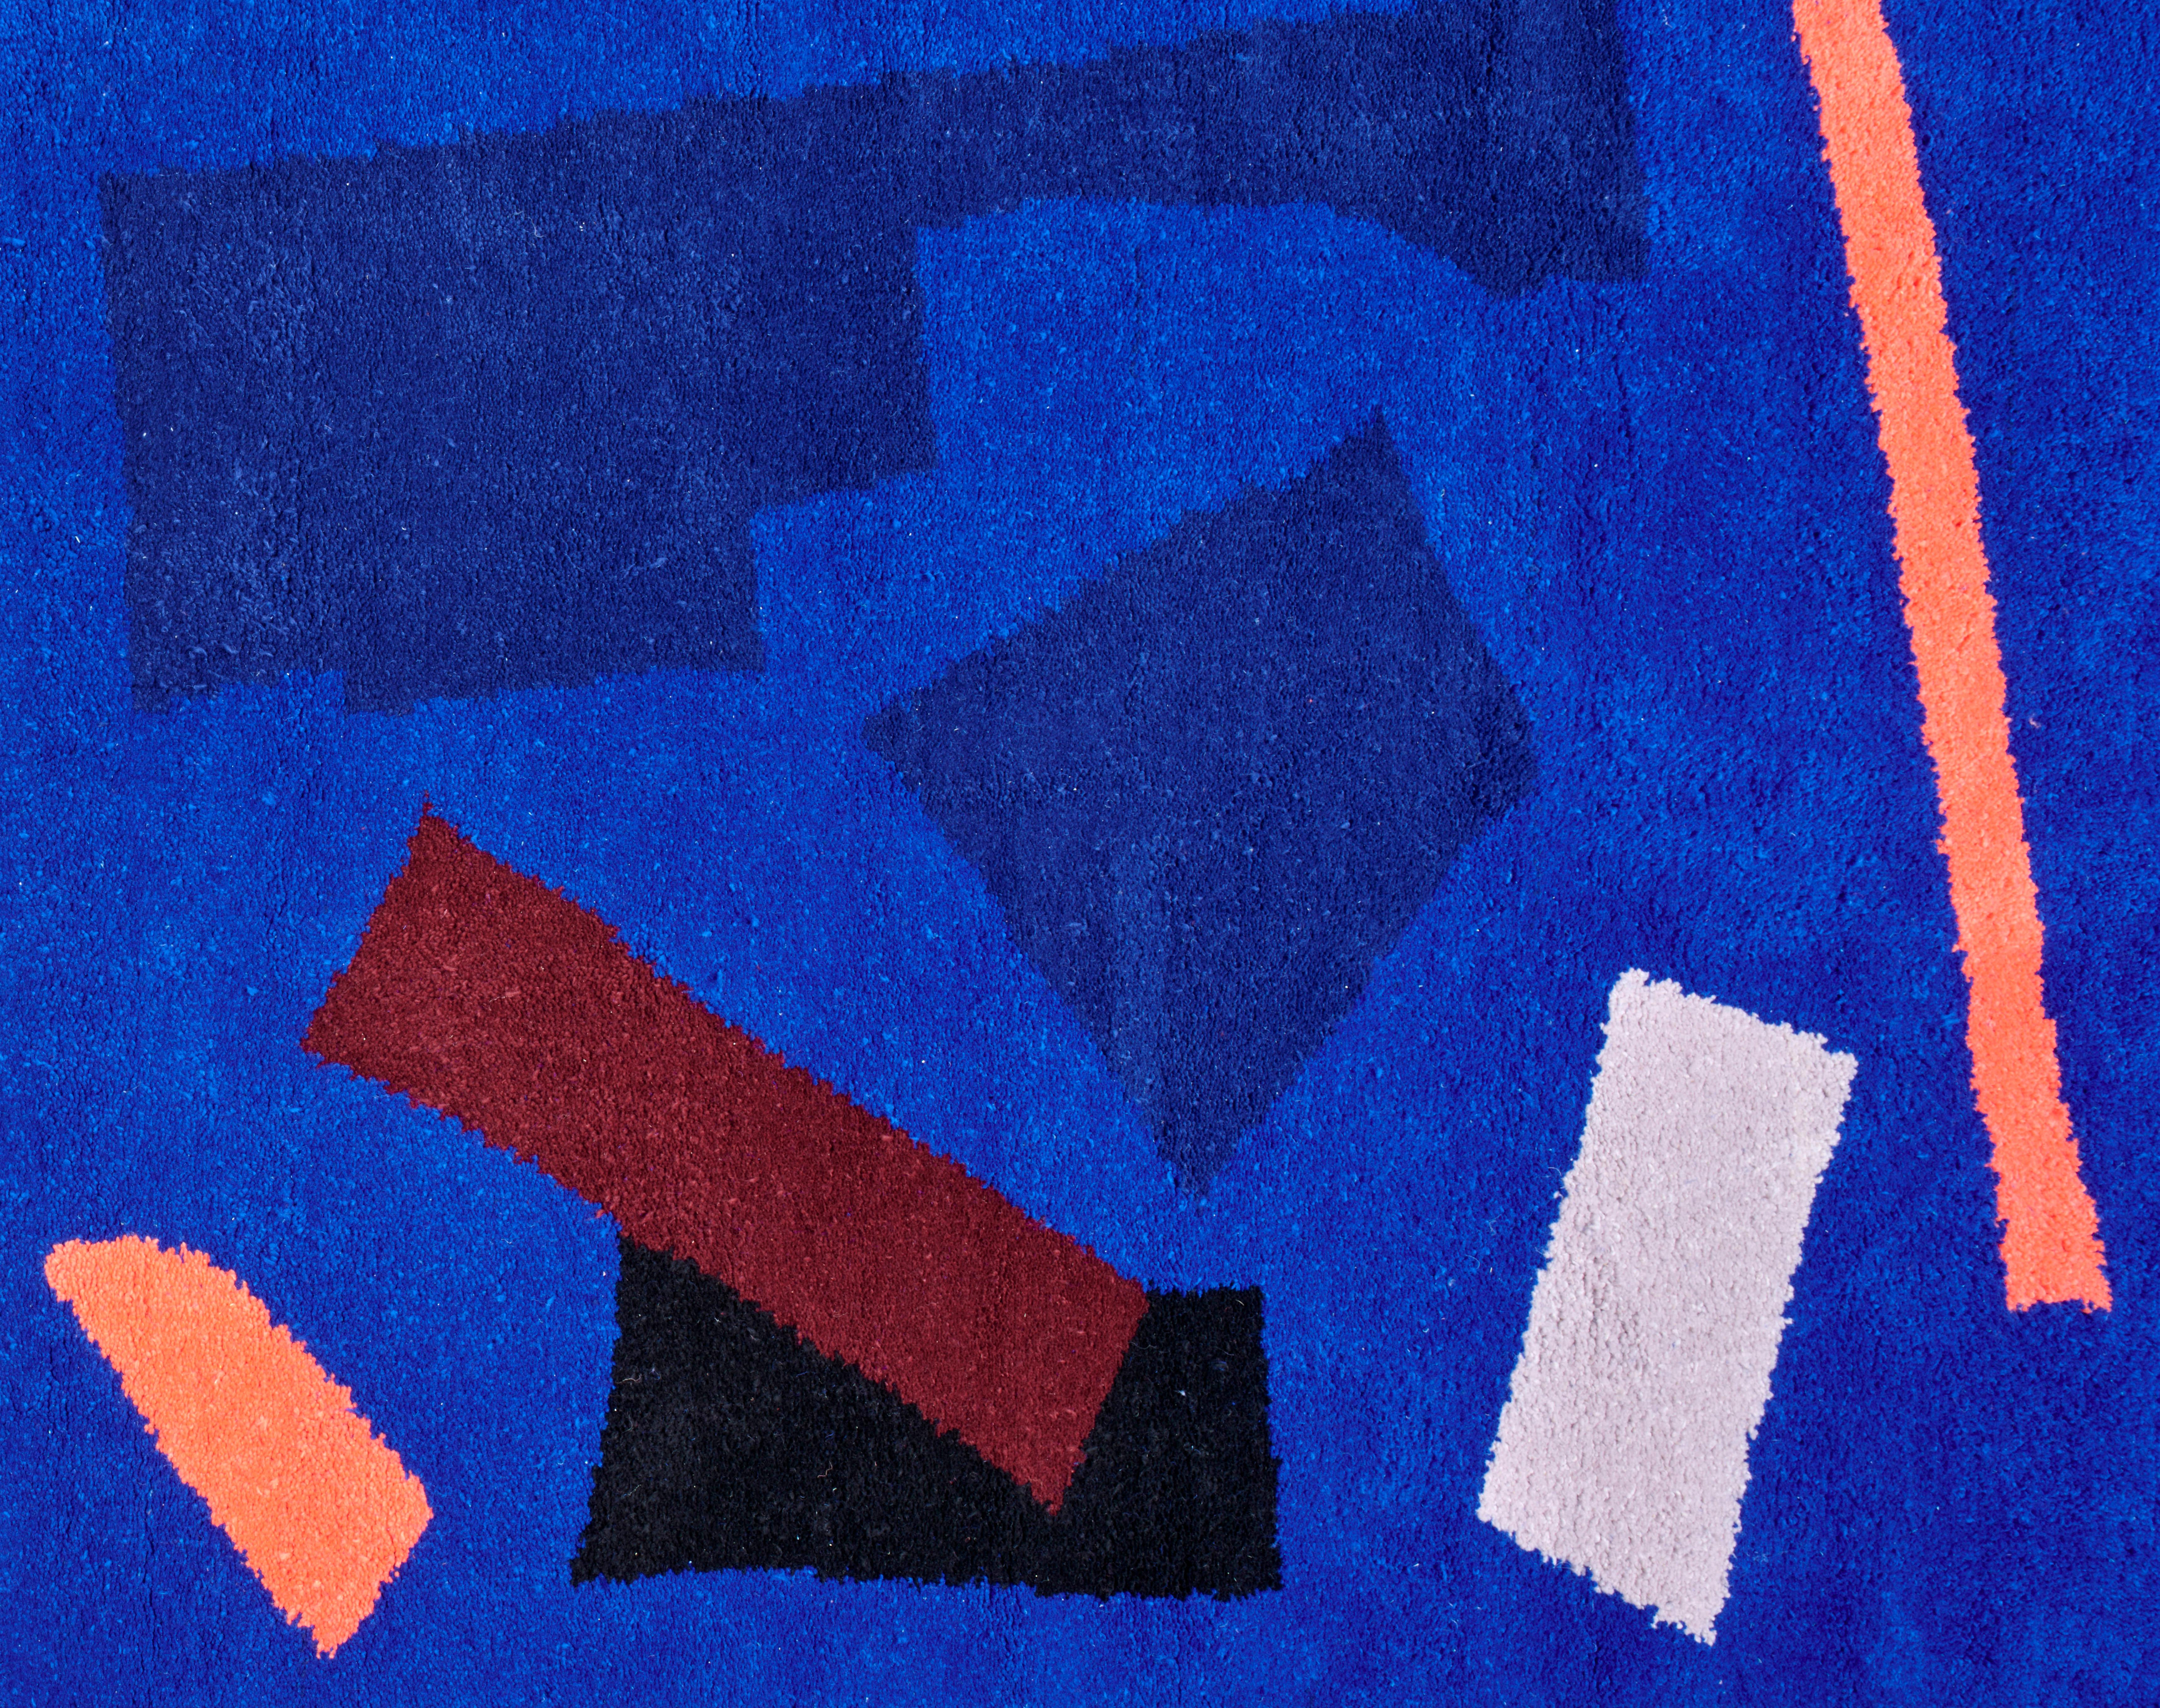 La collection Entwine de couvertures et de tapis de Maria Jeglinska montre une application plus aléatoire des couleurs et des lignes, la poétique de la grille est toujours là mais le design se dirige vers sa décomposition. La contamination